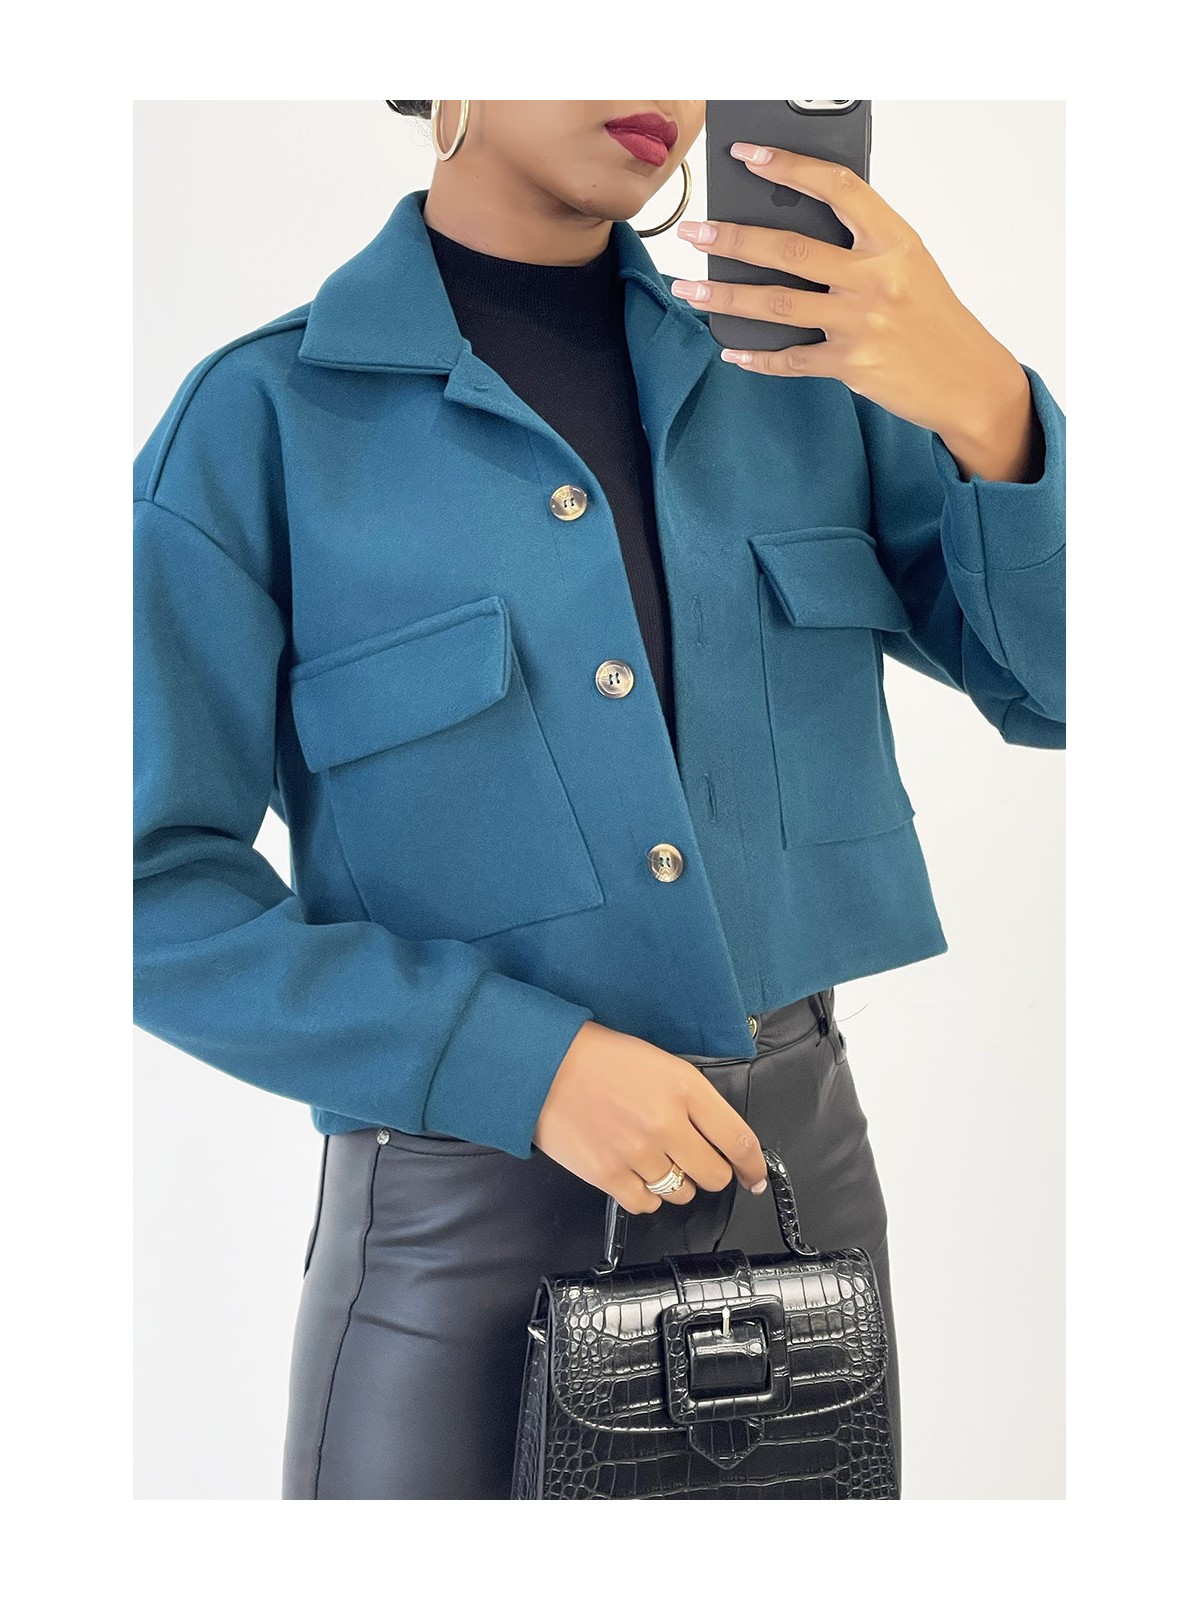 Veste courte très fashion en bleue avec poches au buste - 3